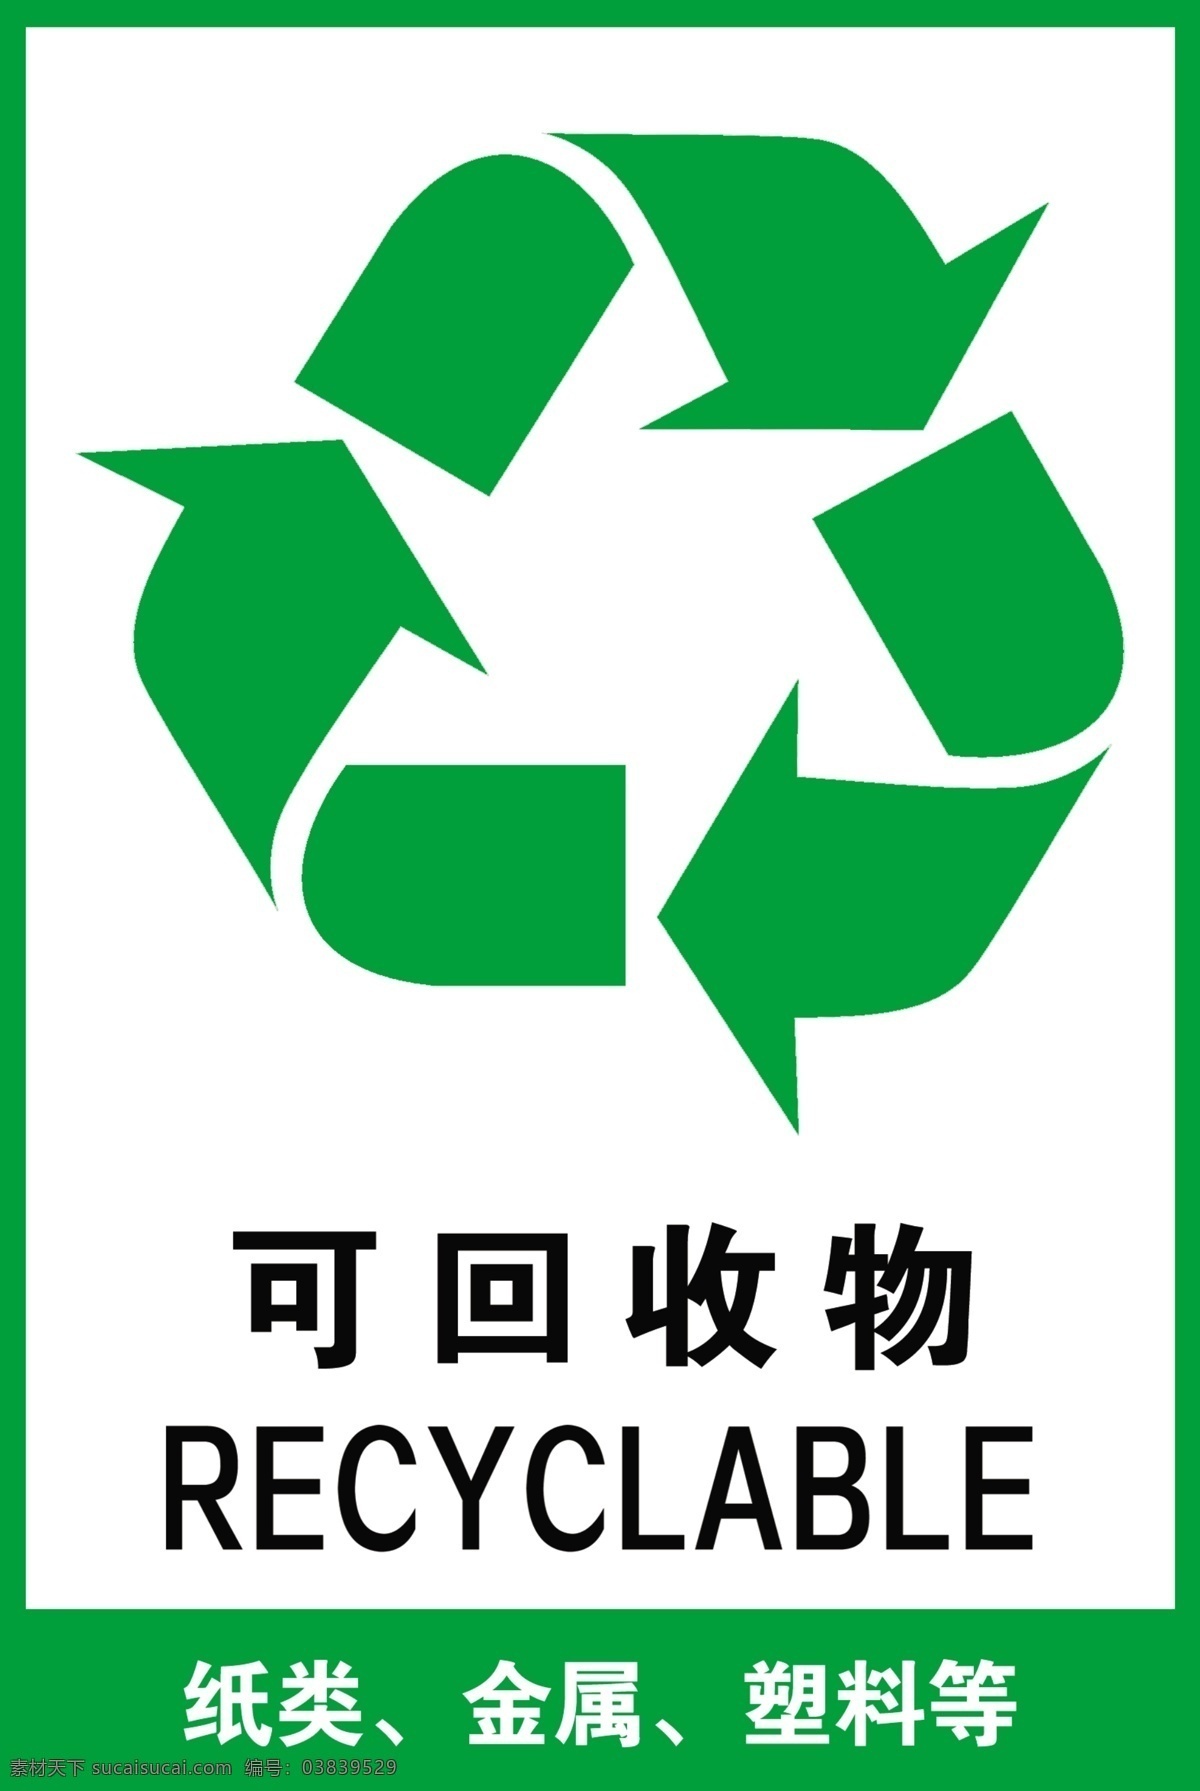 可回收垃圾 垃圾标志 垃圾分类 垃圾 垃圾桶 垃圾箱 标志图标 公共标识标志